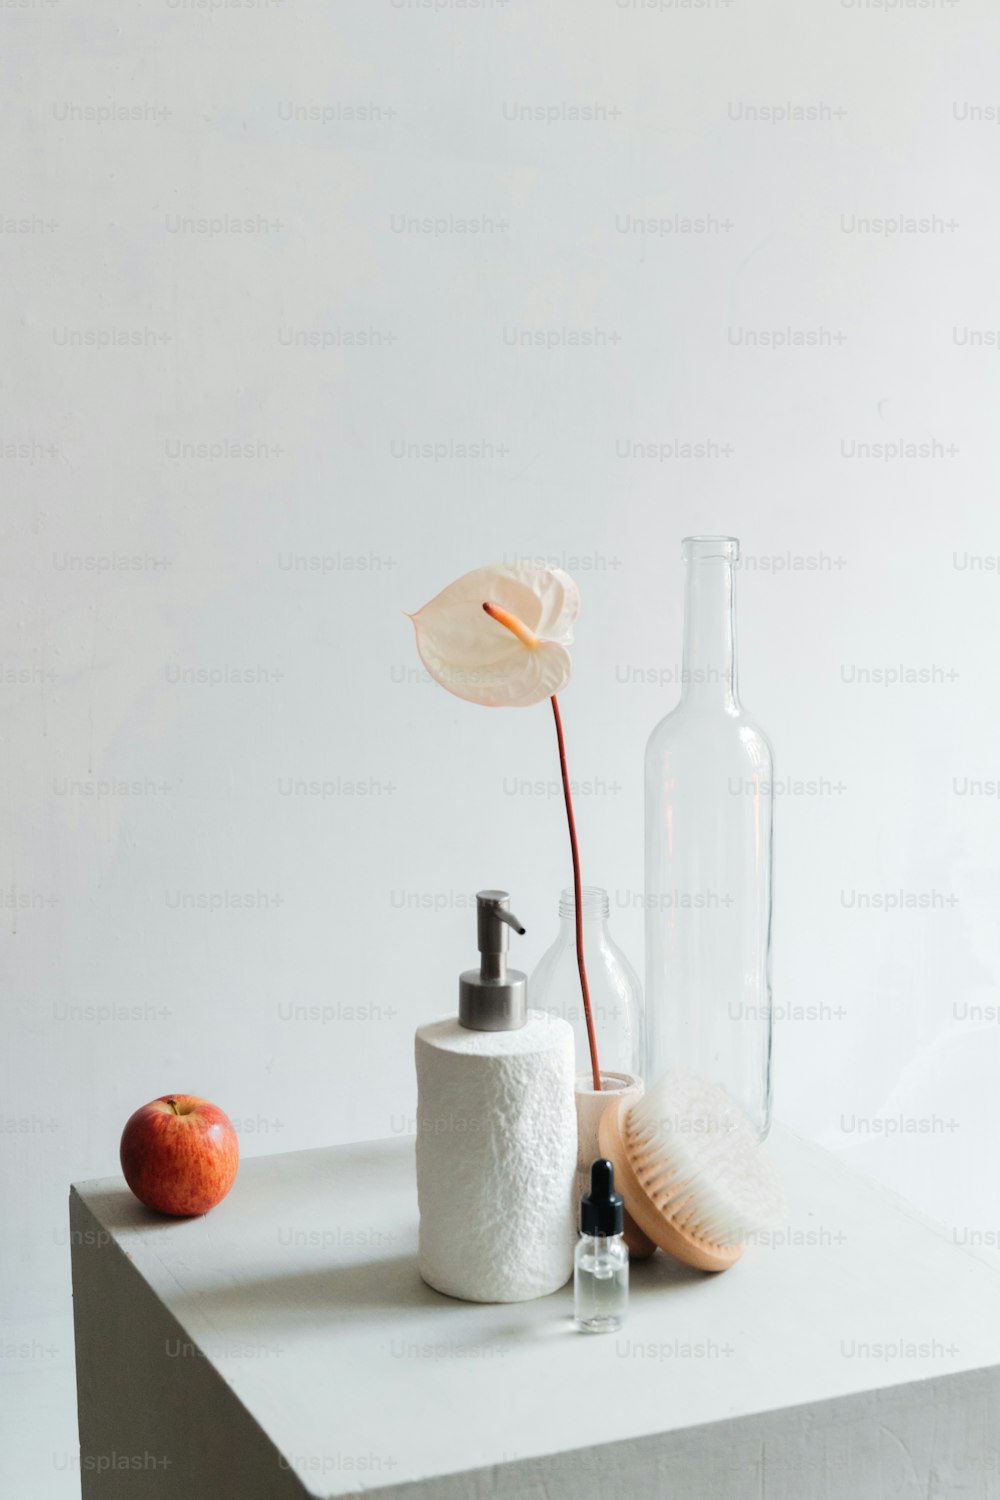 uma garrafa, um dispensador de sabão e uma maçã sentam-se sobre uma mesa